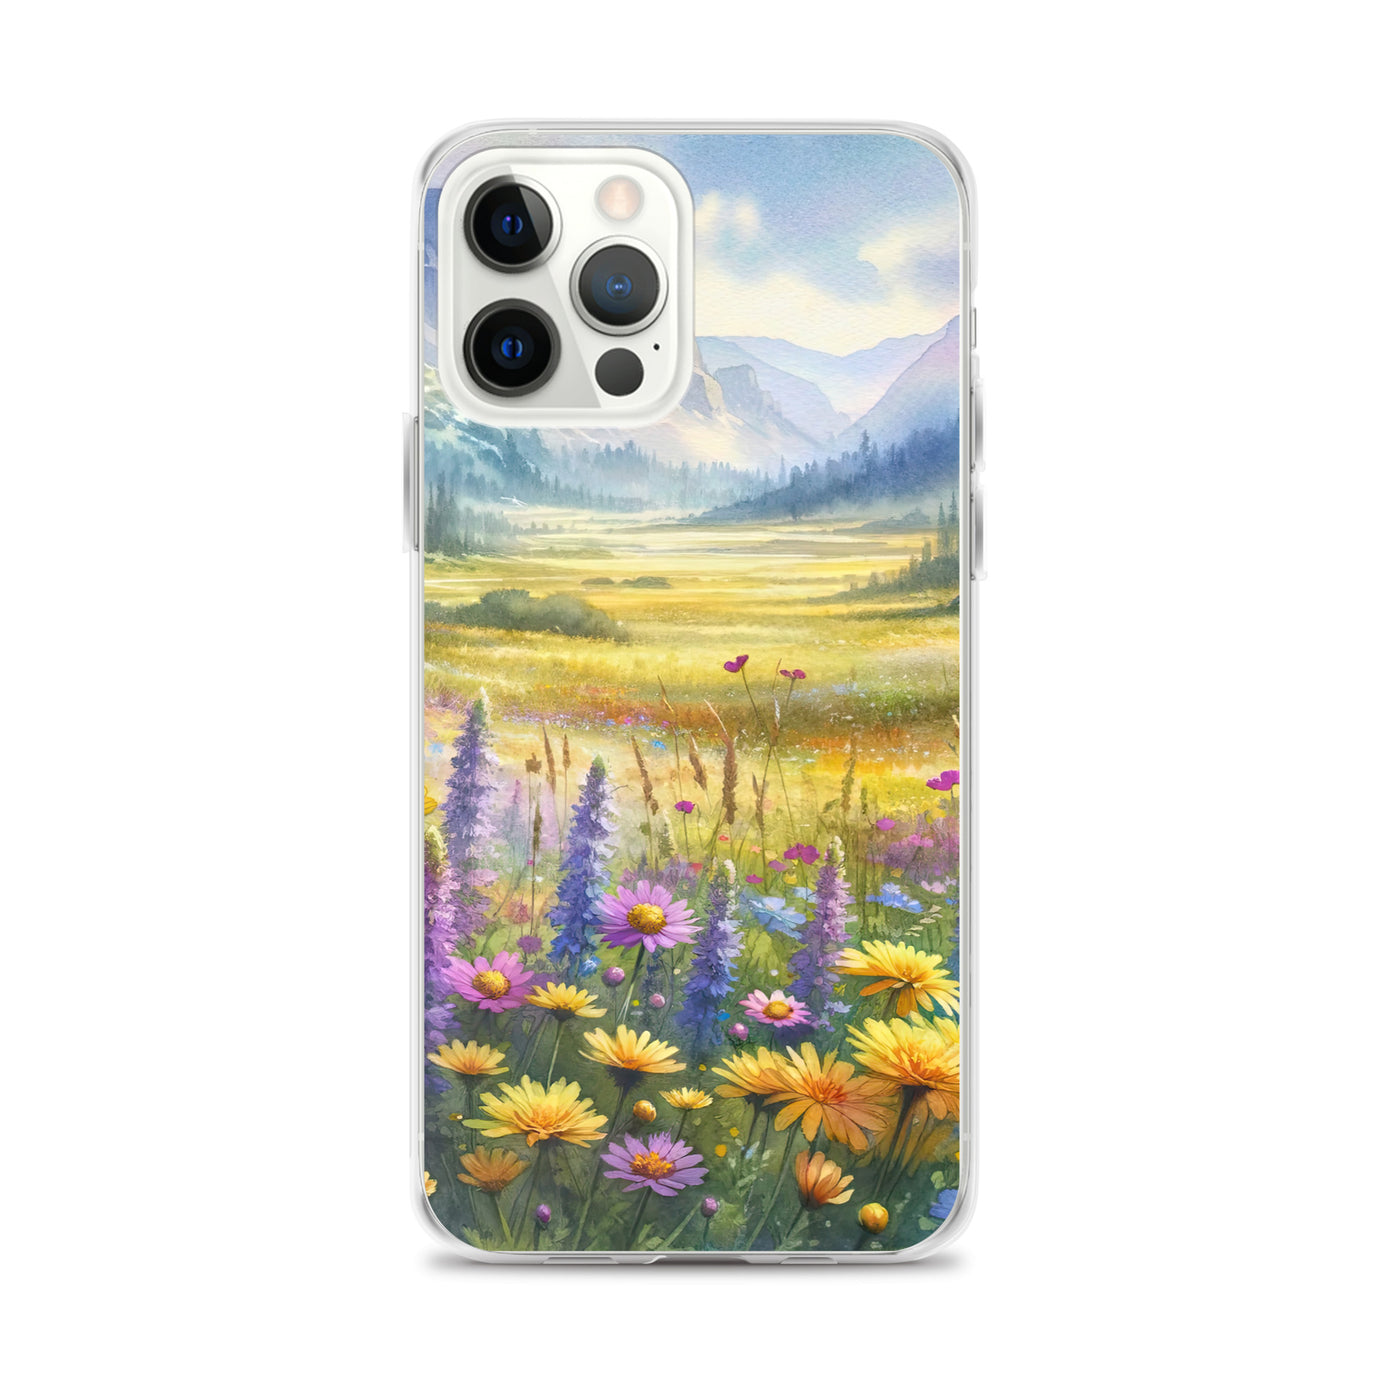 Aquarell einer Almwiese in Ruhe, Wildblumenteppich in Gelb, Lila, Rosa - iPhone Schutzhülle (durchsichtig) berge xxx yyy zzz iPhone 12 Pro Max